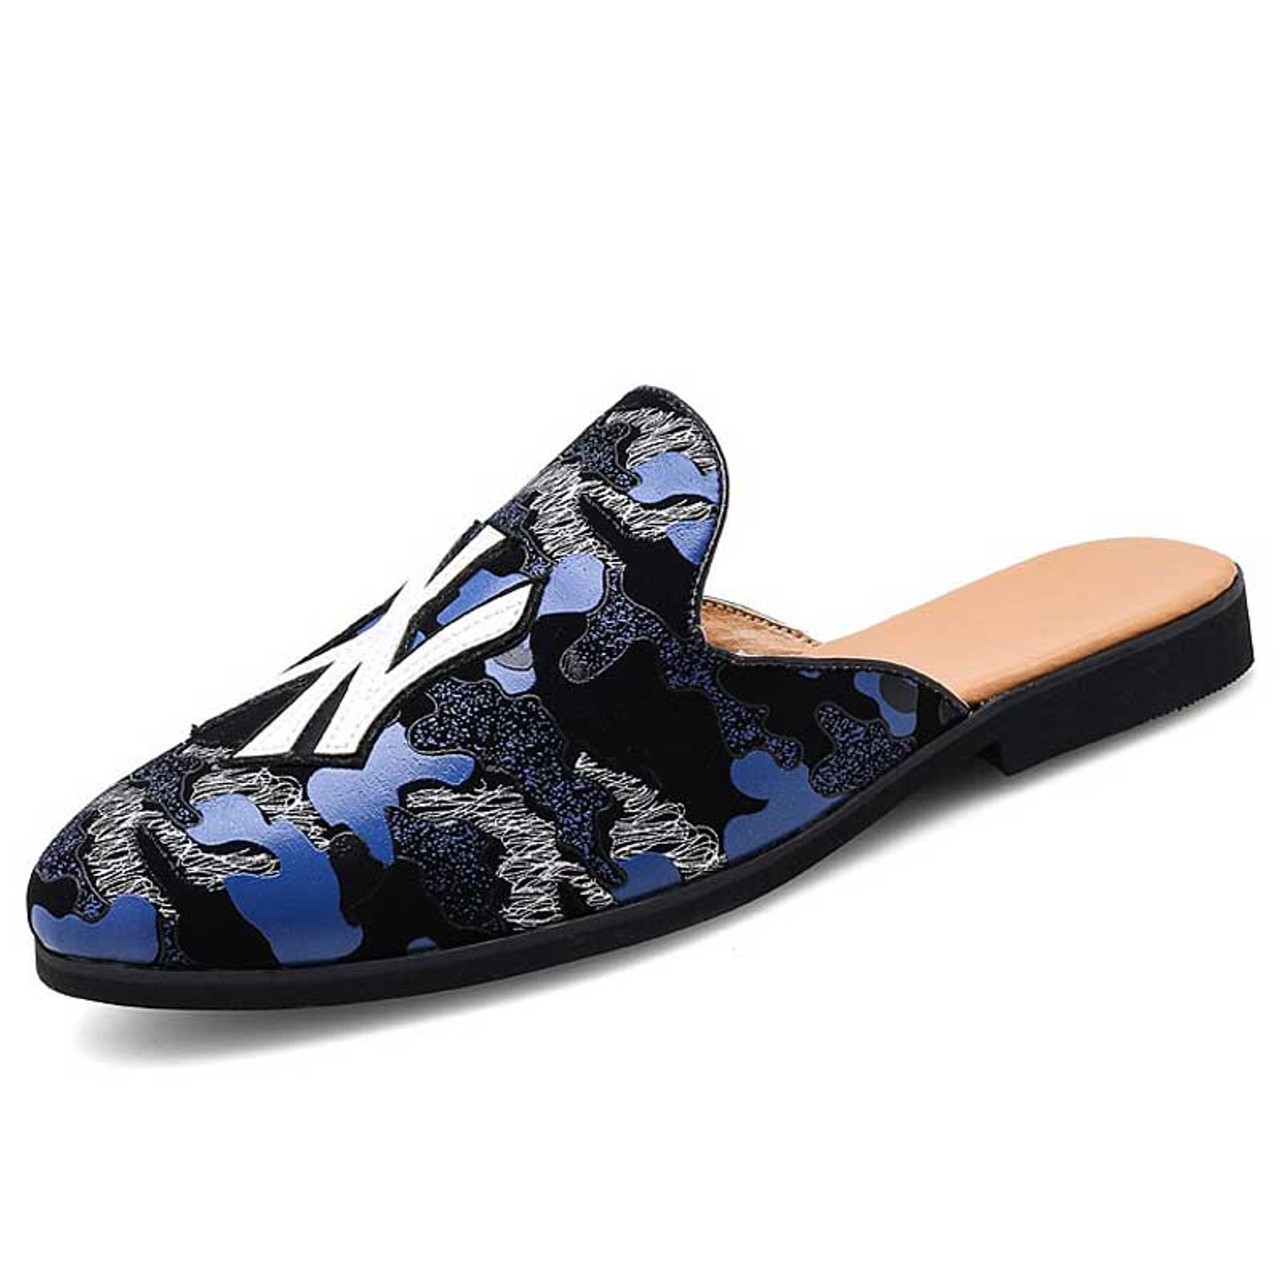 Black blue pattern print slip on shoe mule